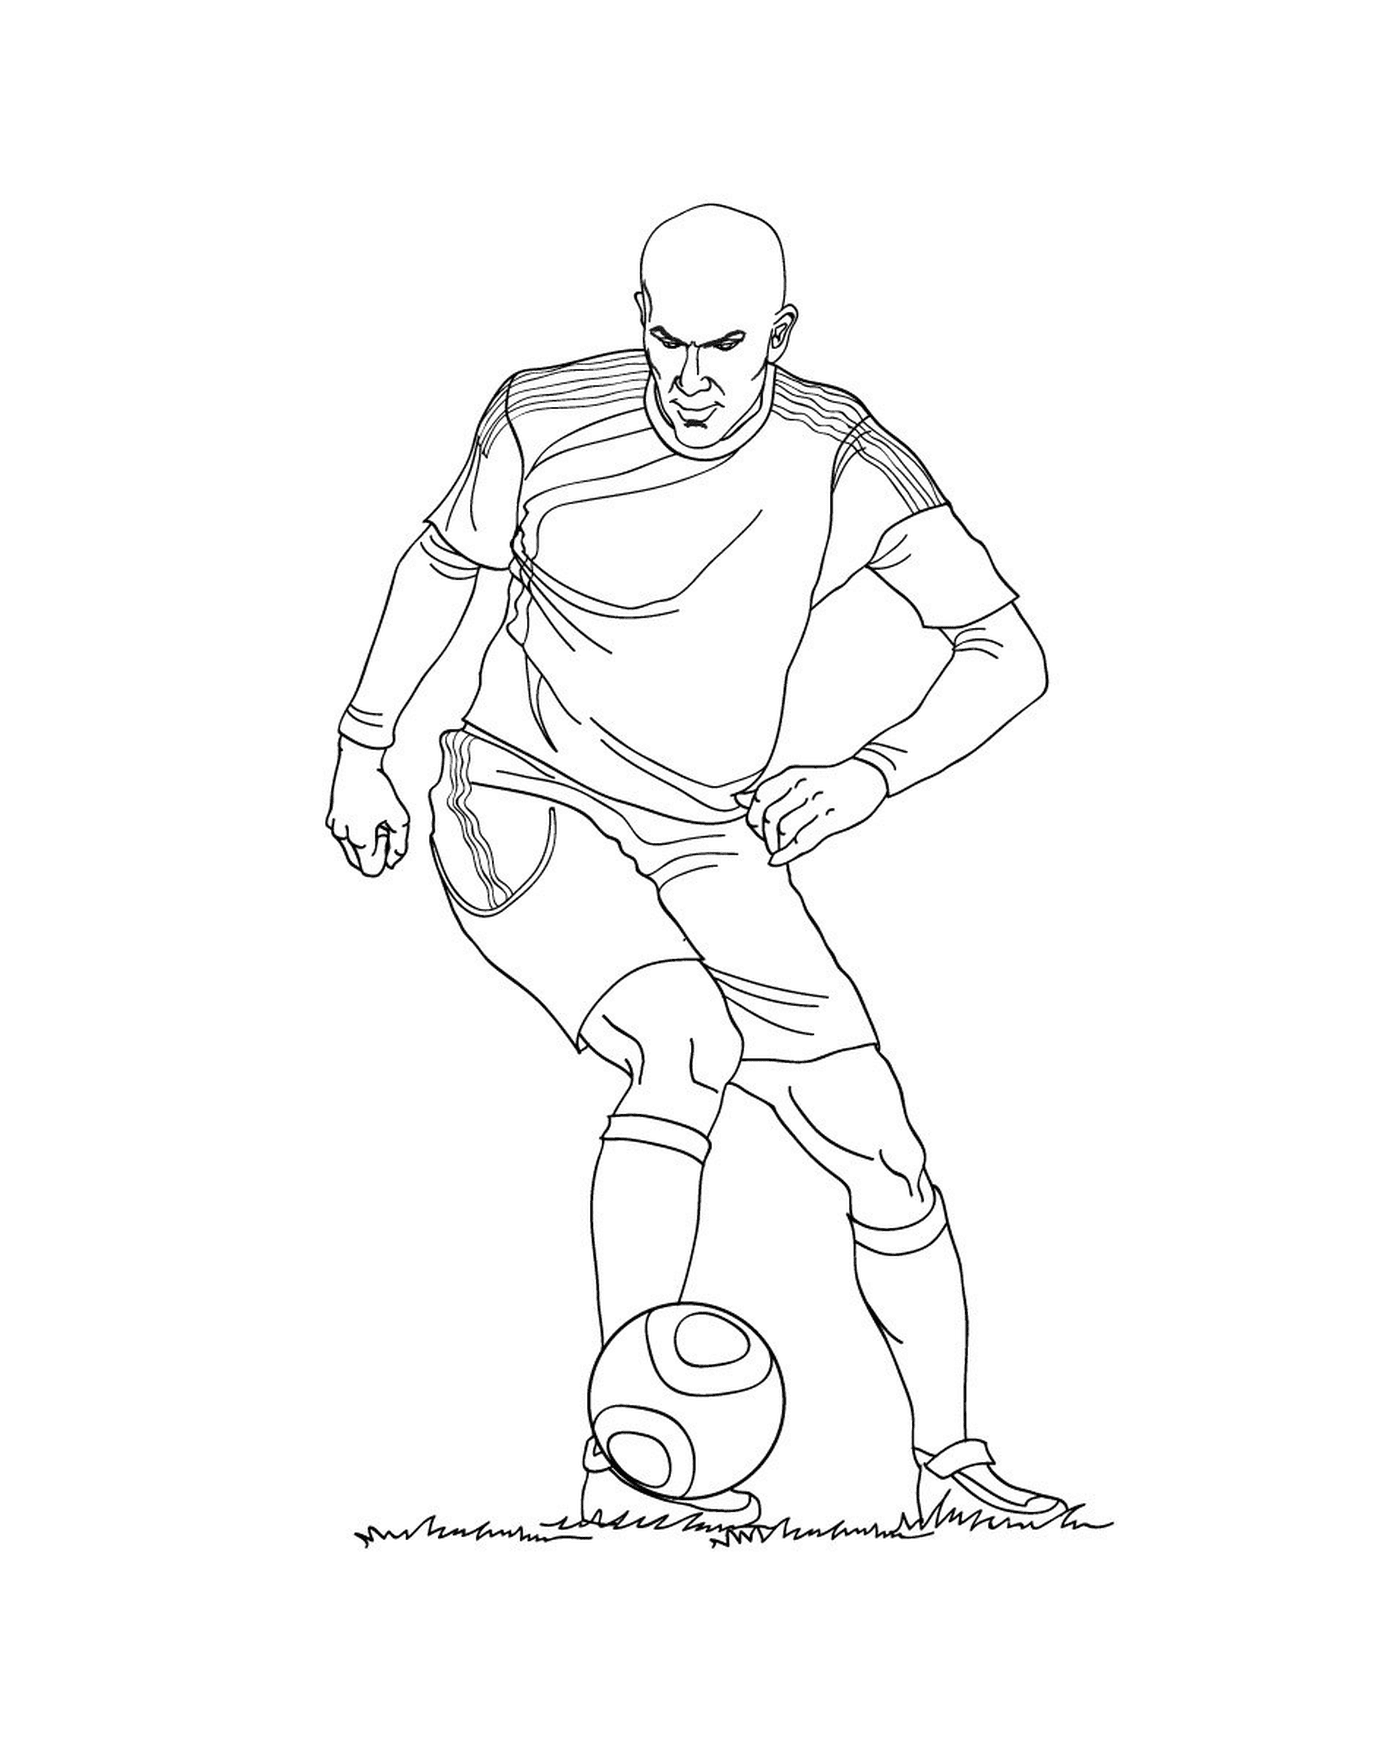  Футбольный игрок пинается в мяч 